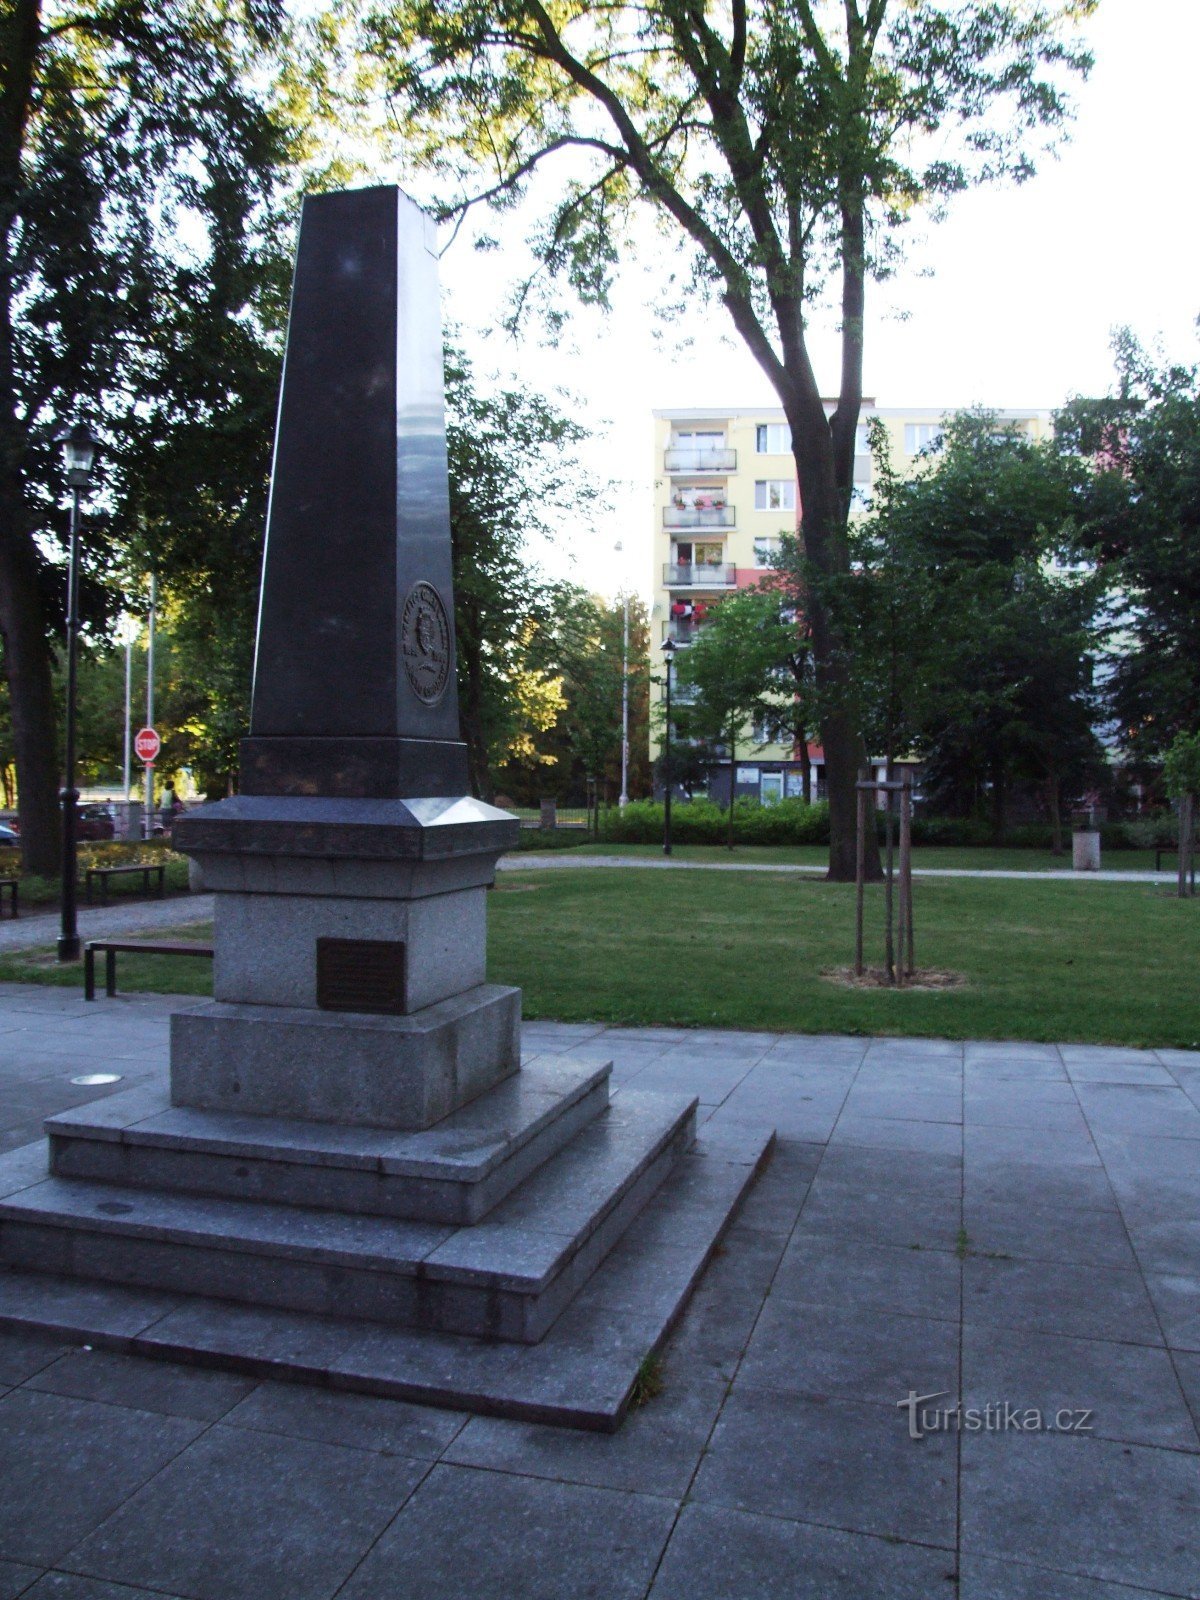 Monumento para homenagear a memória das vítimas das guerras